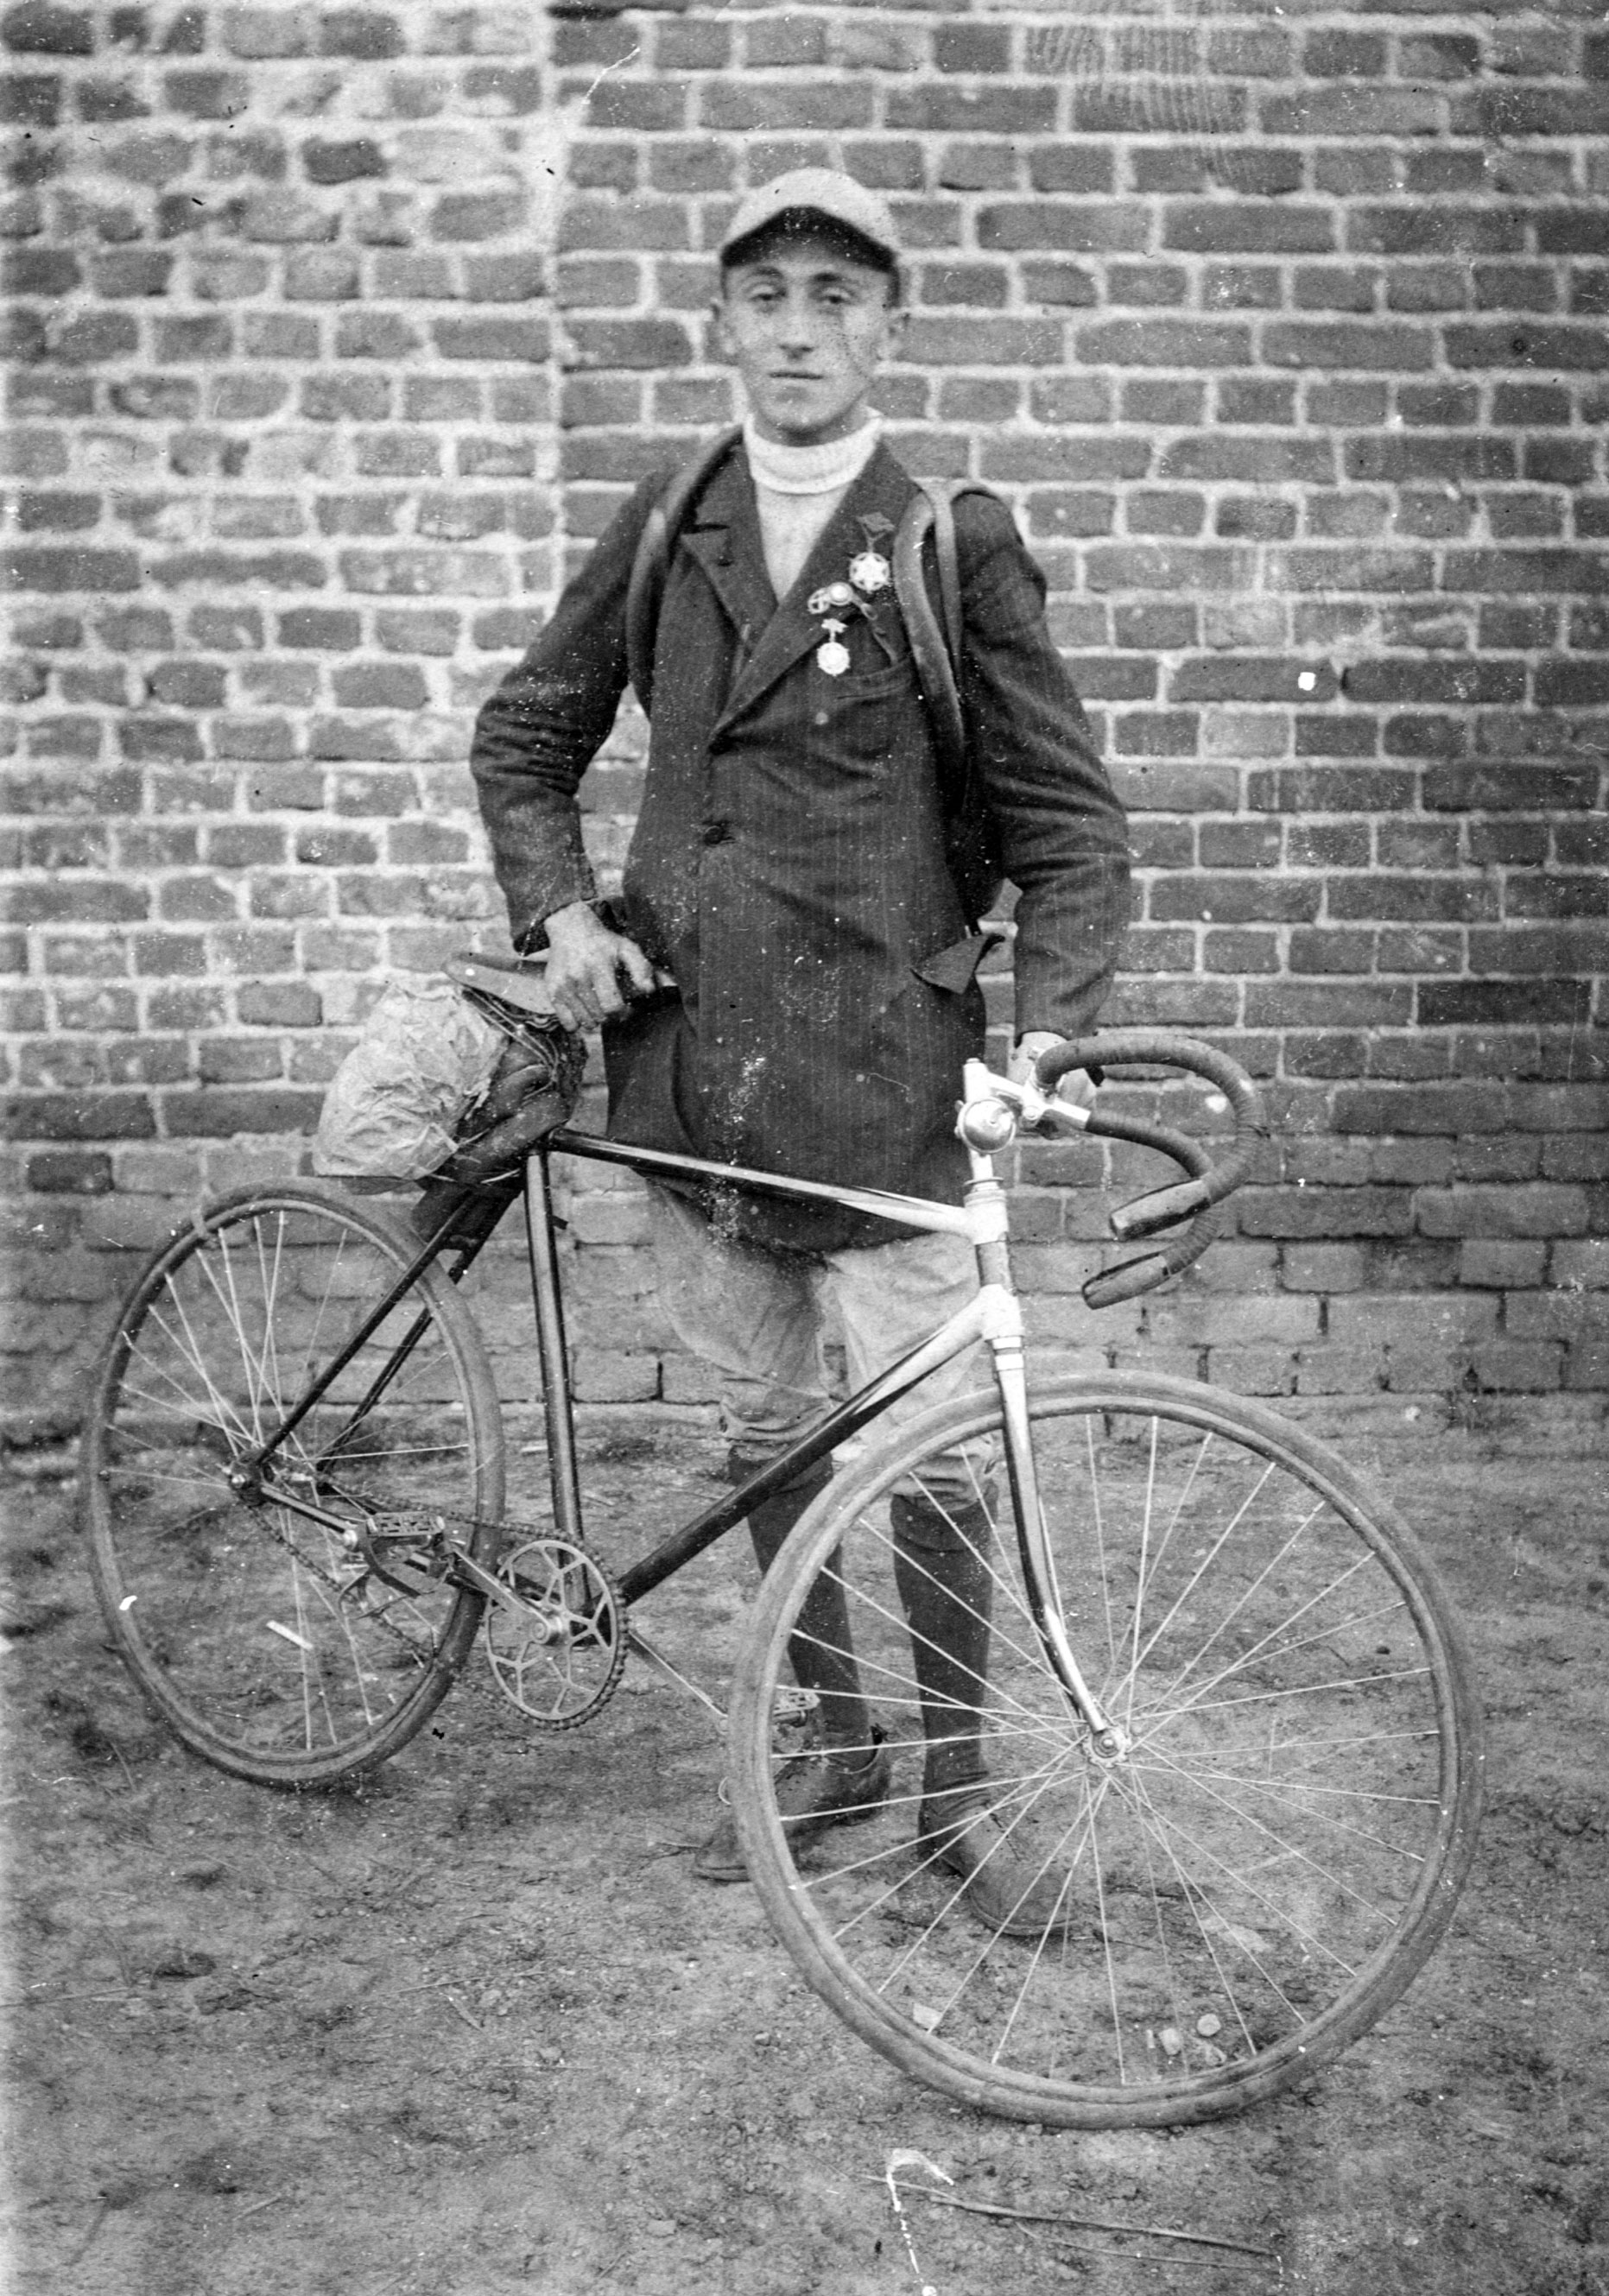 Moshe Cukierman, Mitglied des Sportvereins Bar Kochba in Lodz, Polen, neben seinem Fahrrad, Anfang der 1920er Jahre